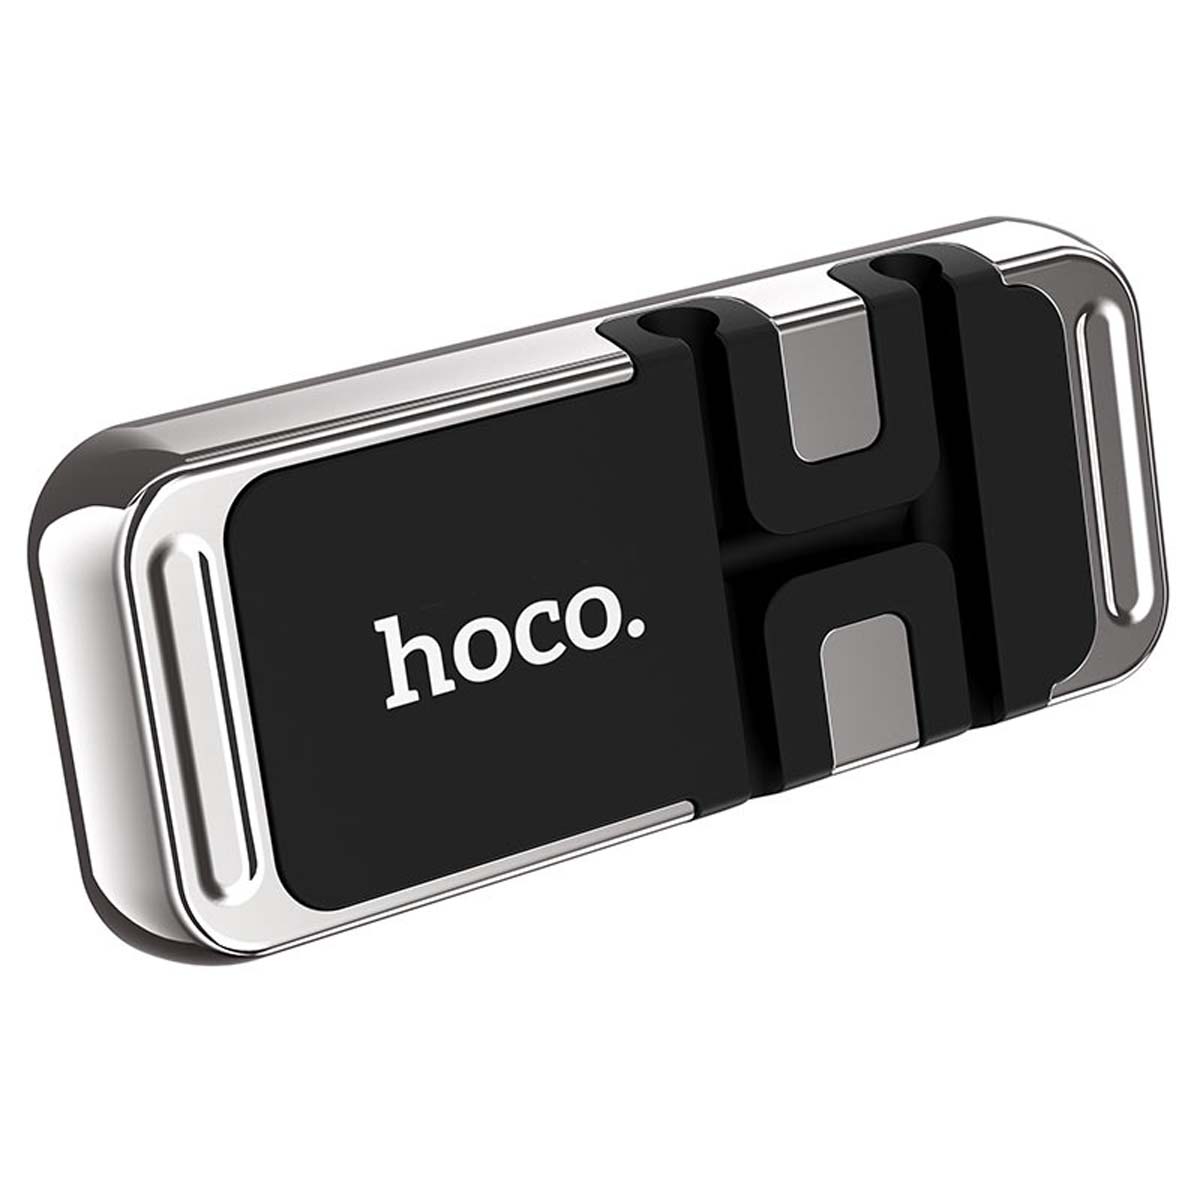 Автомобильный магнитный держатель HOCO CA77 Carry для смартфона, цвет серебристый